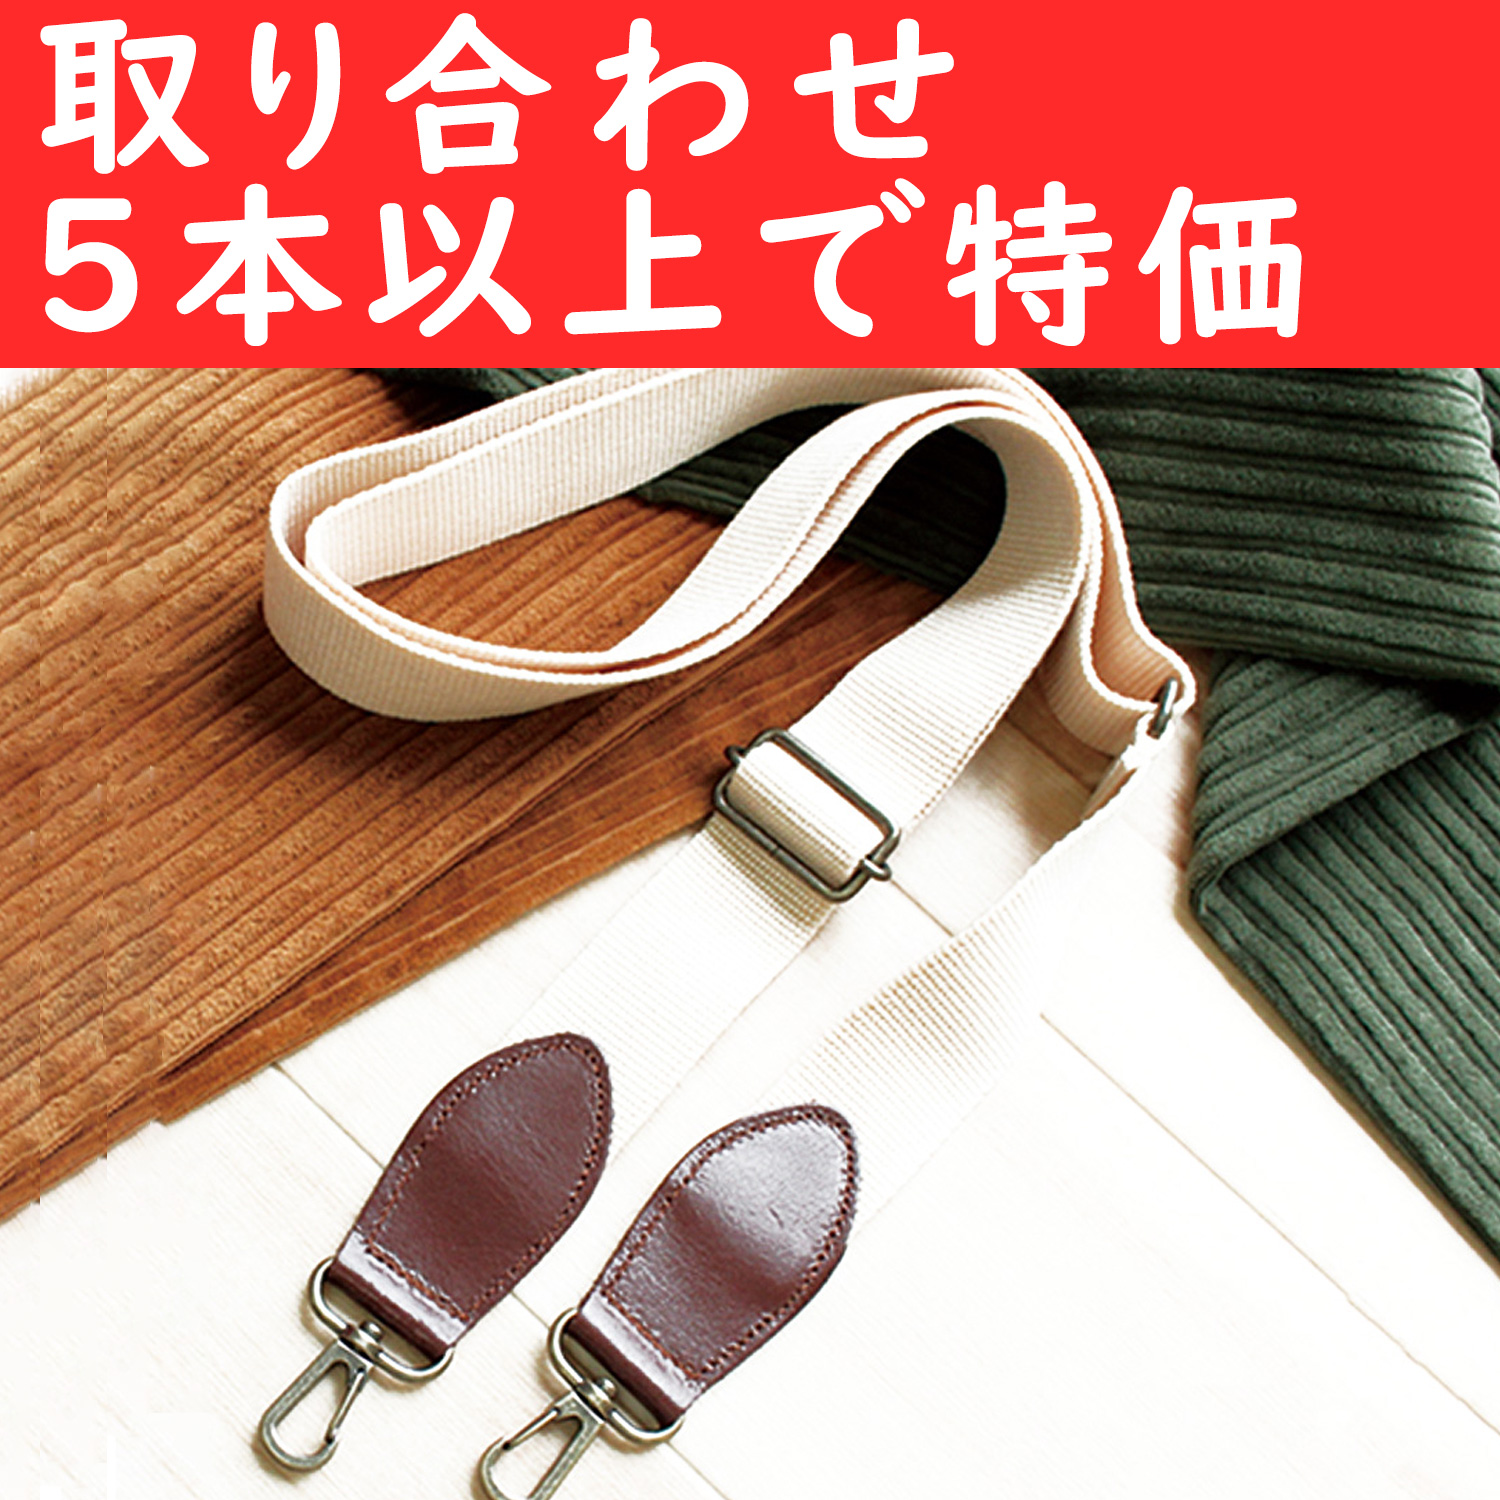 【夏の感謝祭】KT87-OVER5 レザーコンビショルダー 巾30mm 色取り合わせ5本以上 (本)